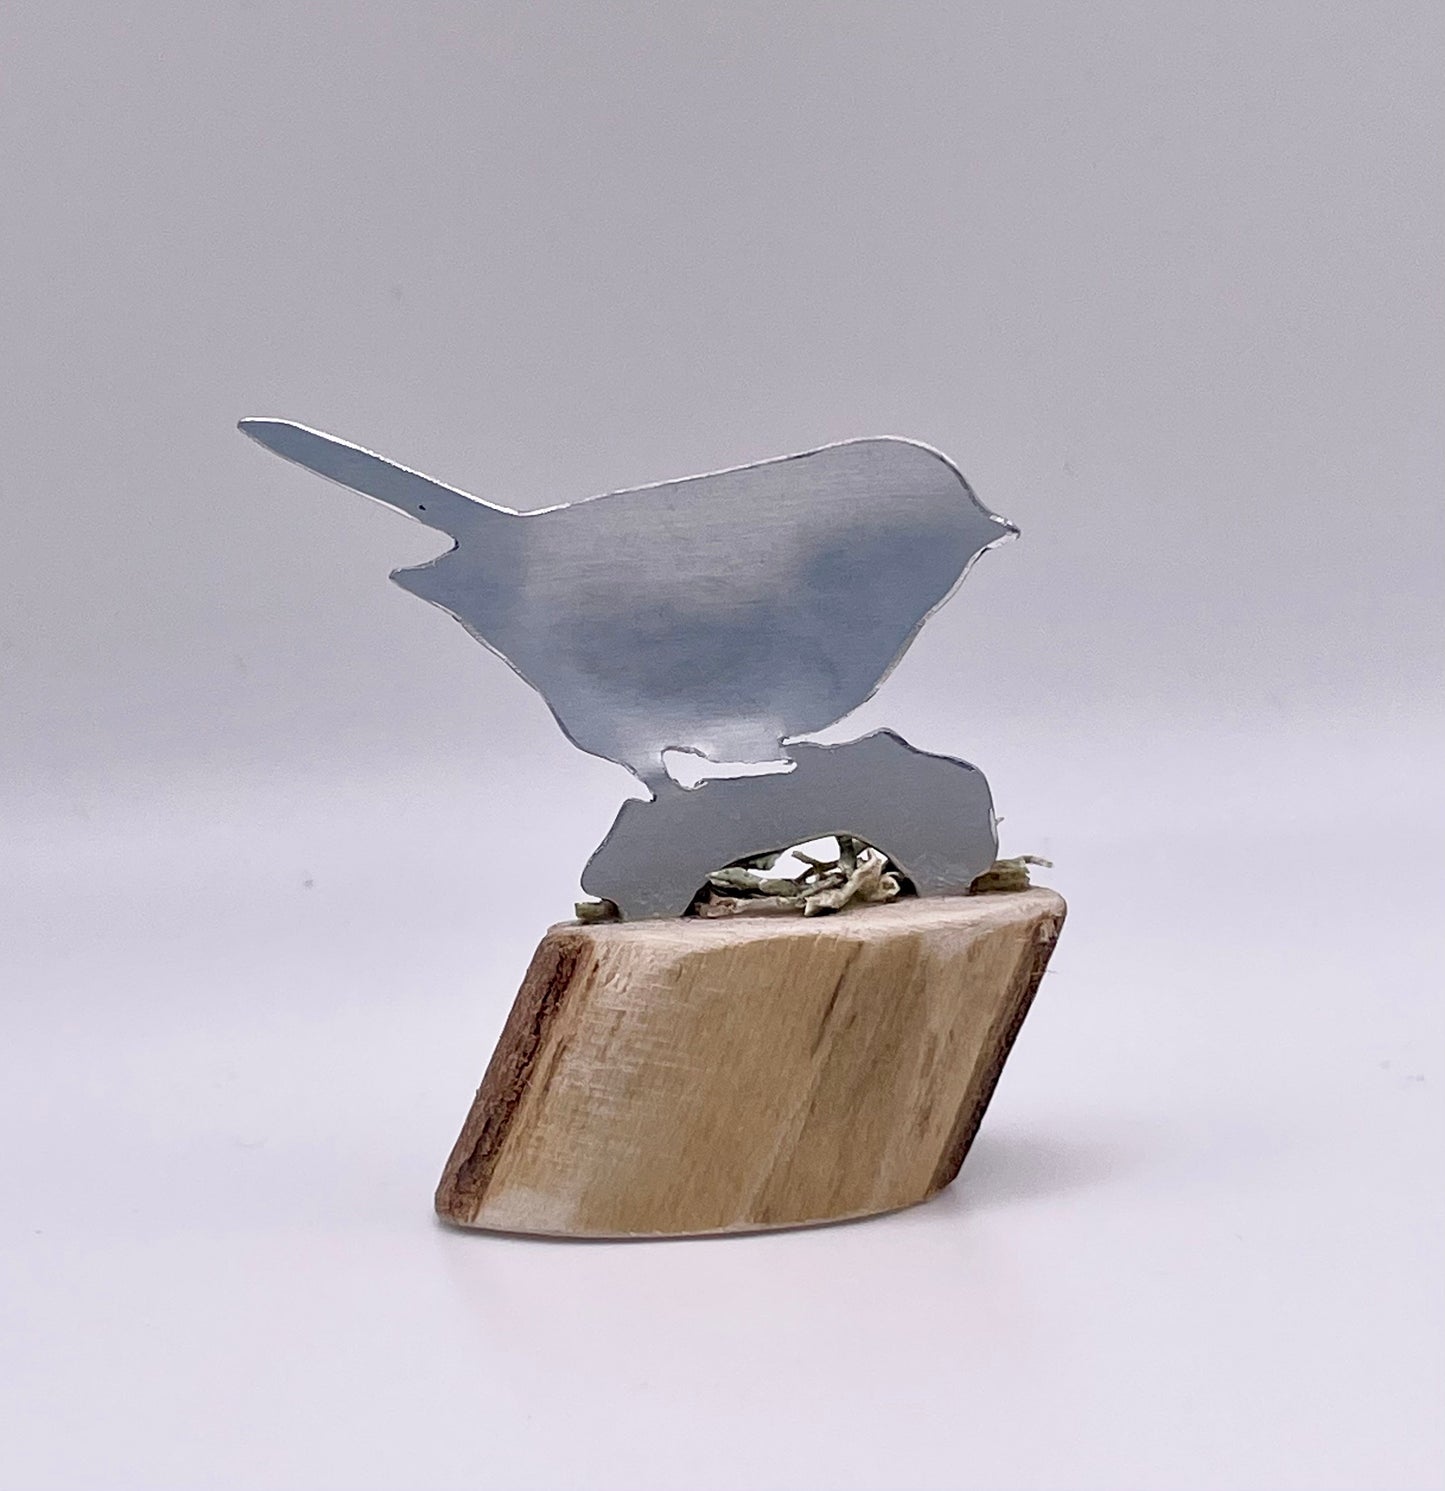 Mini Robin - Robin Sculpture - Metal bird - Metal Robin - Robin on Wood - Miniature Ornament - Miniature Birds - Bird gift - Nature in Mini